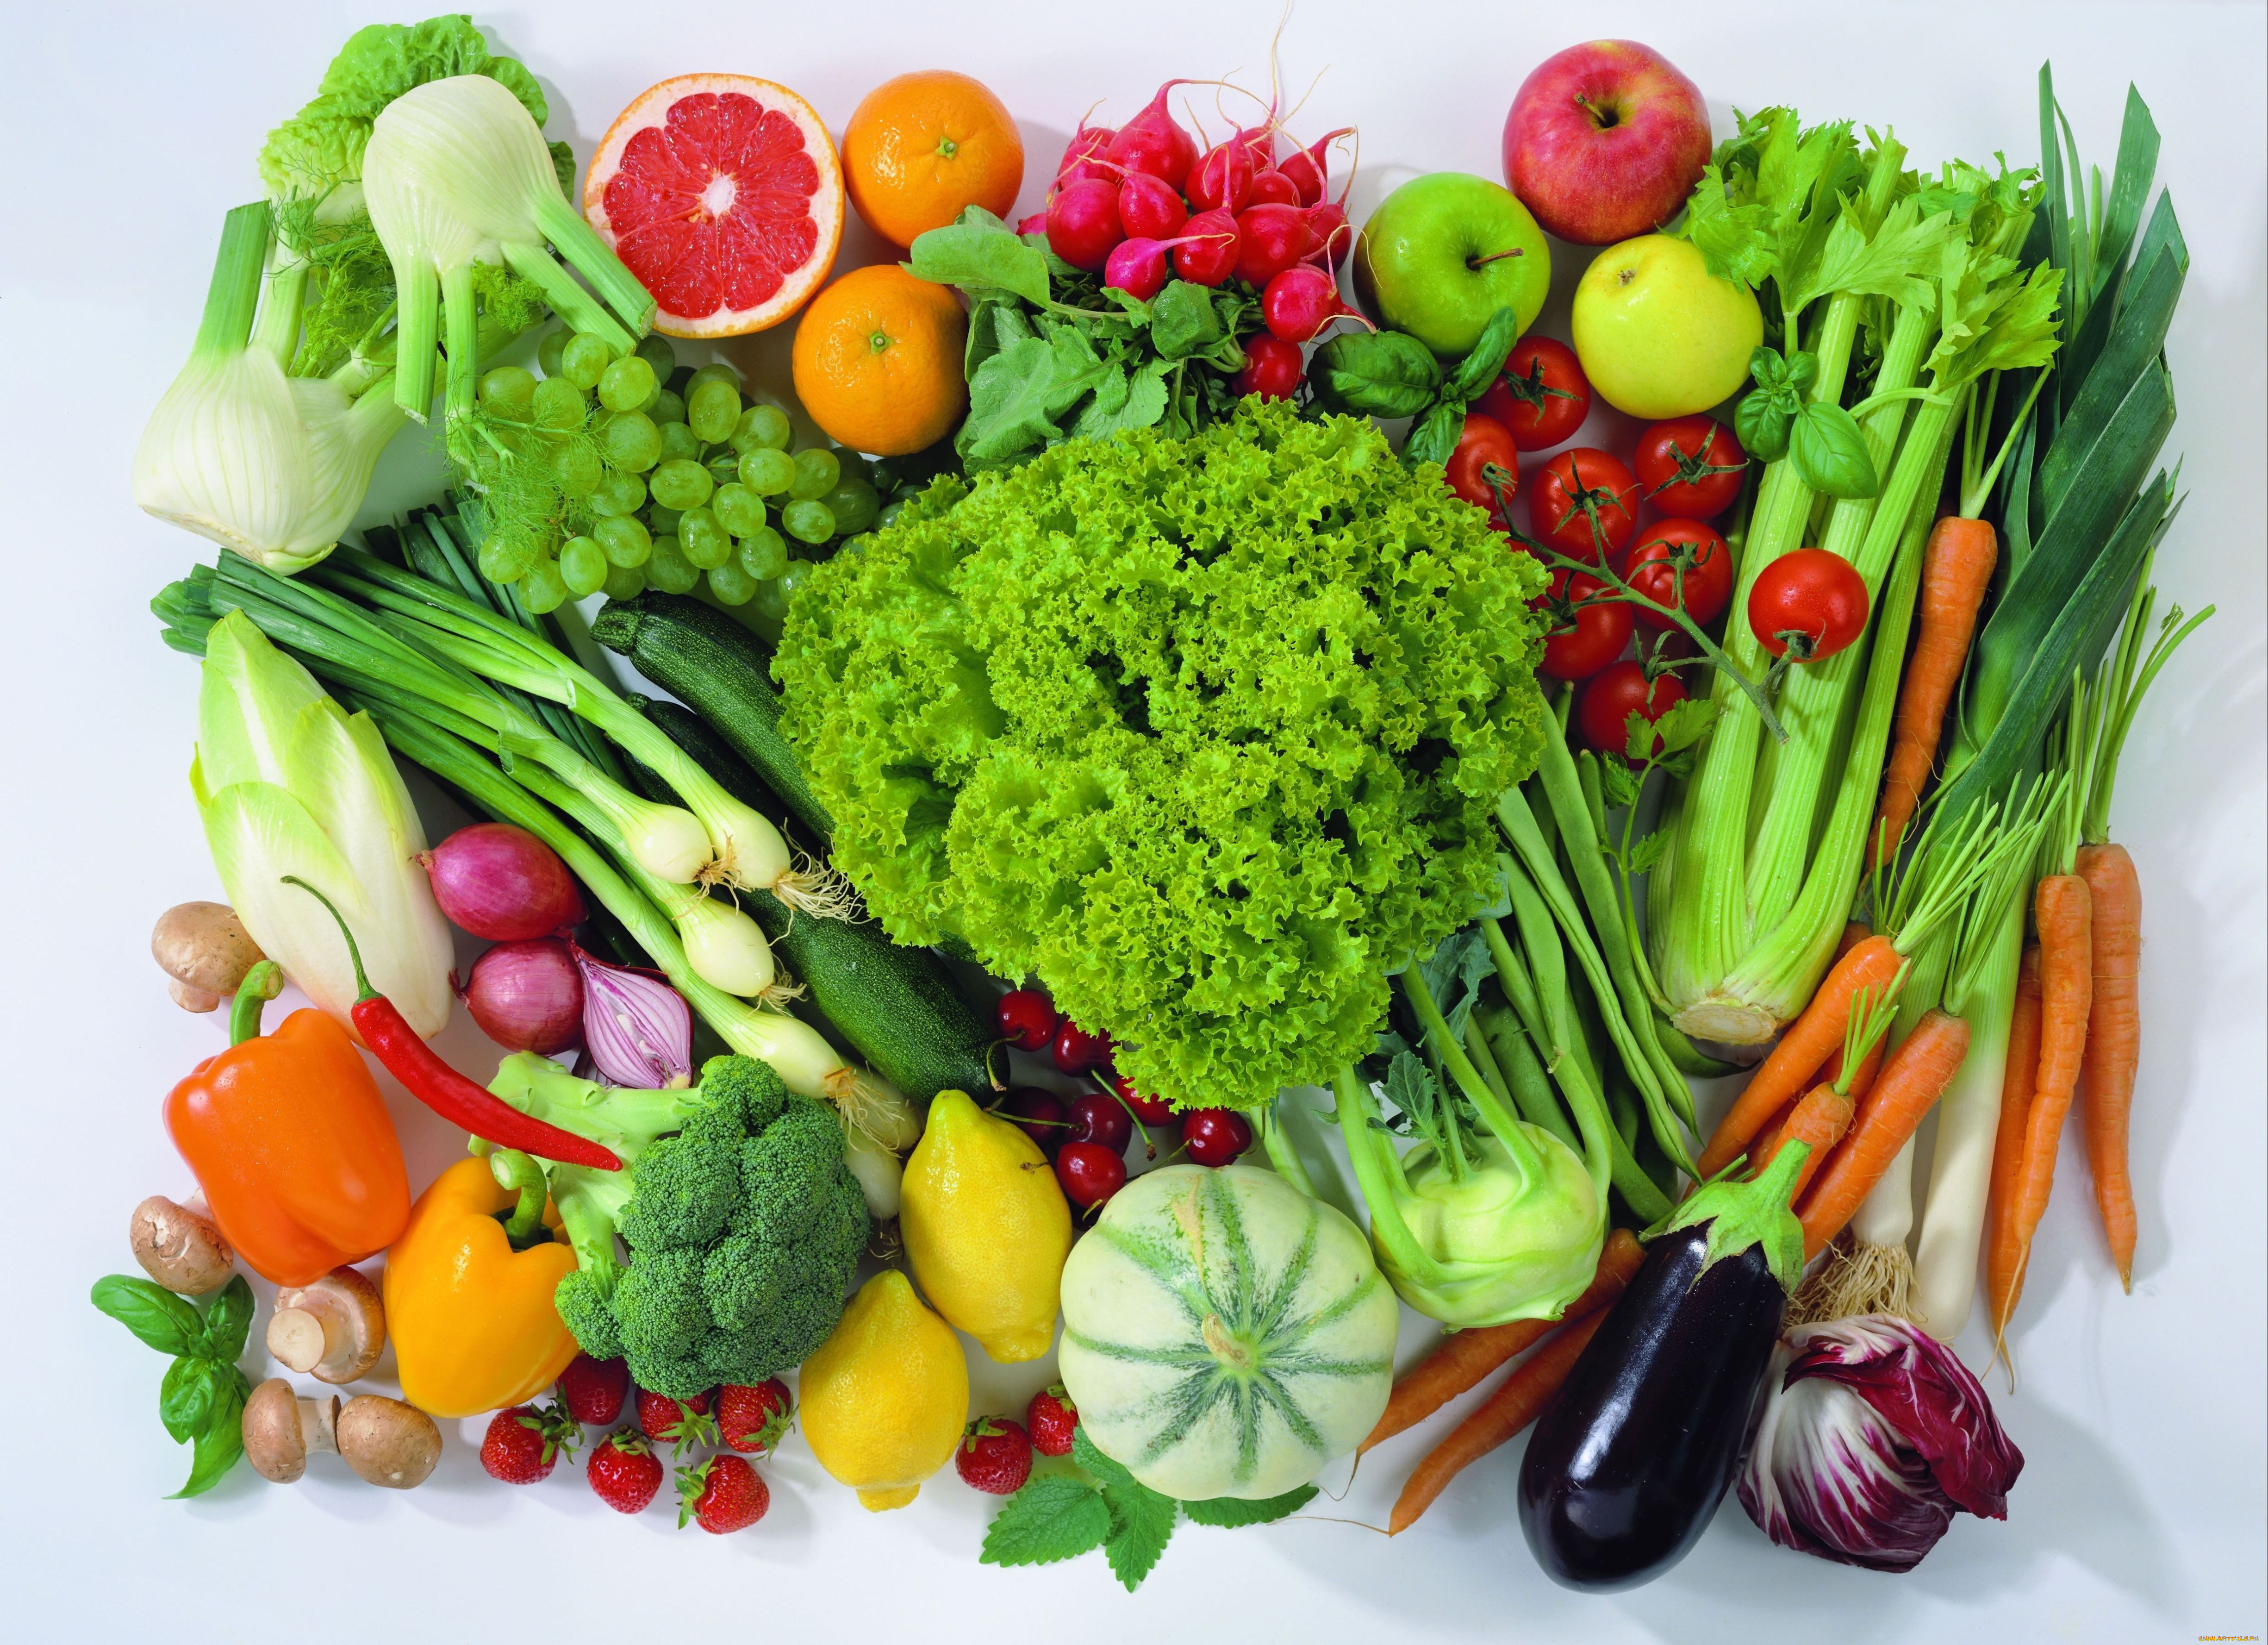 еда, фрукты, овощи, вместе, изобилие, натюрморт, томаты, помидоры, лимон, капуста, перец, зелень